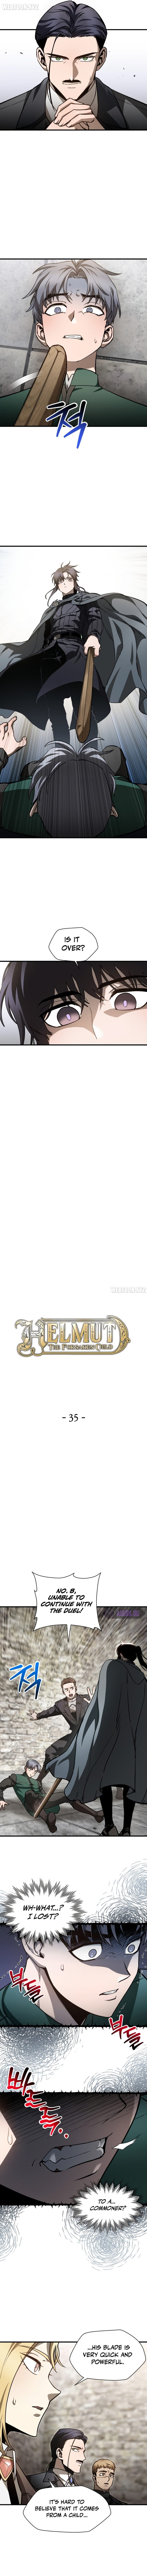 helmut-the-forsaken-child-chap-35-4